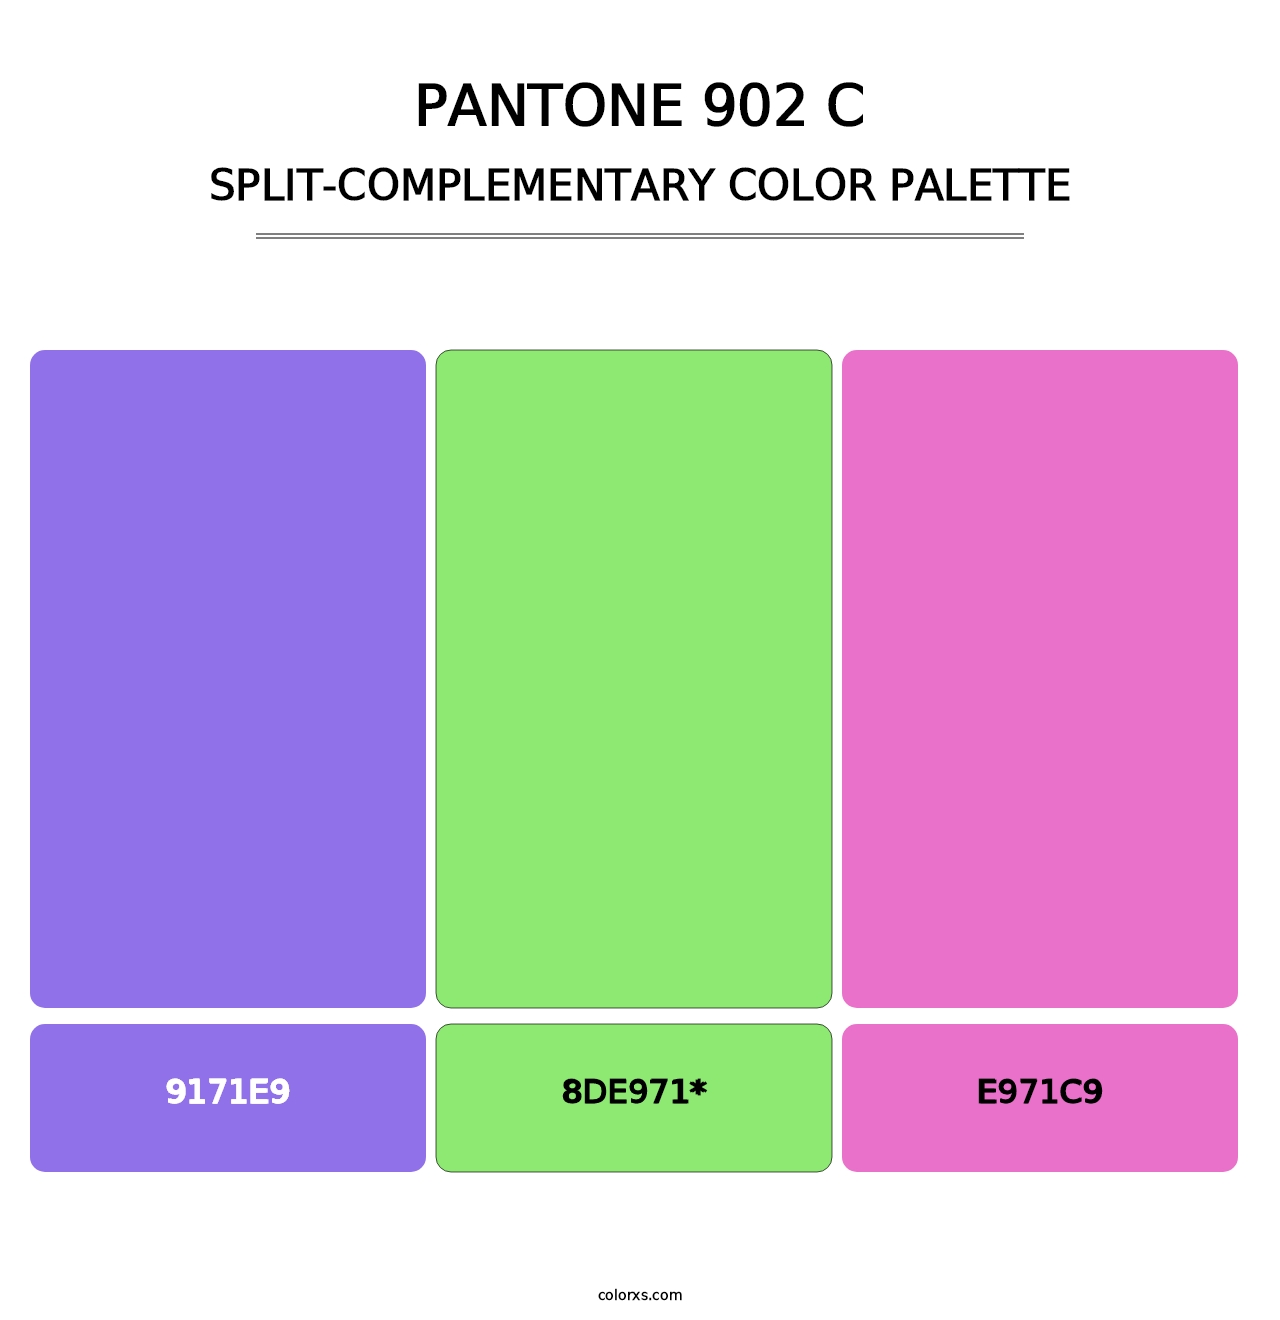 PANTONE 902 C - Split-Complementary Color Palette